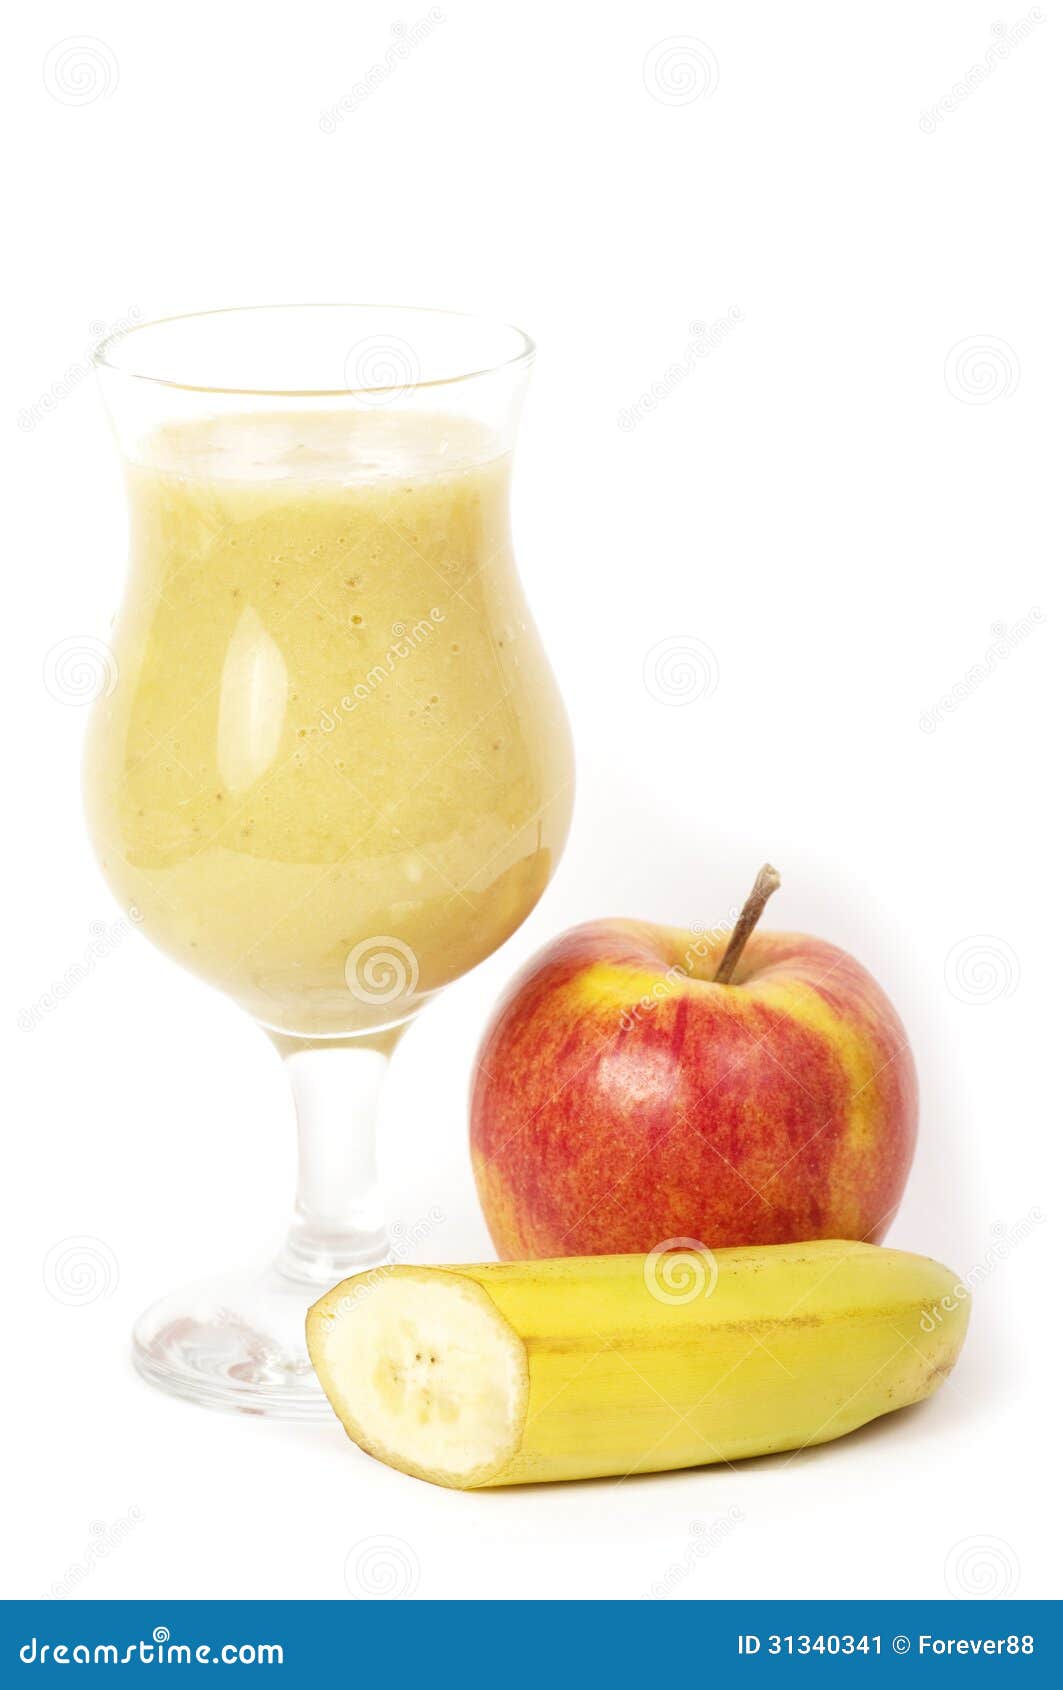 苹果香蕉汁怎么做_苹果香蕉汁的做法_豆果美食